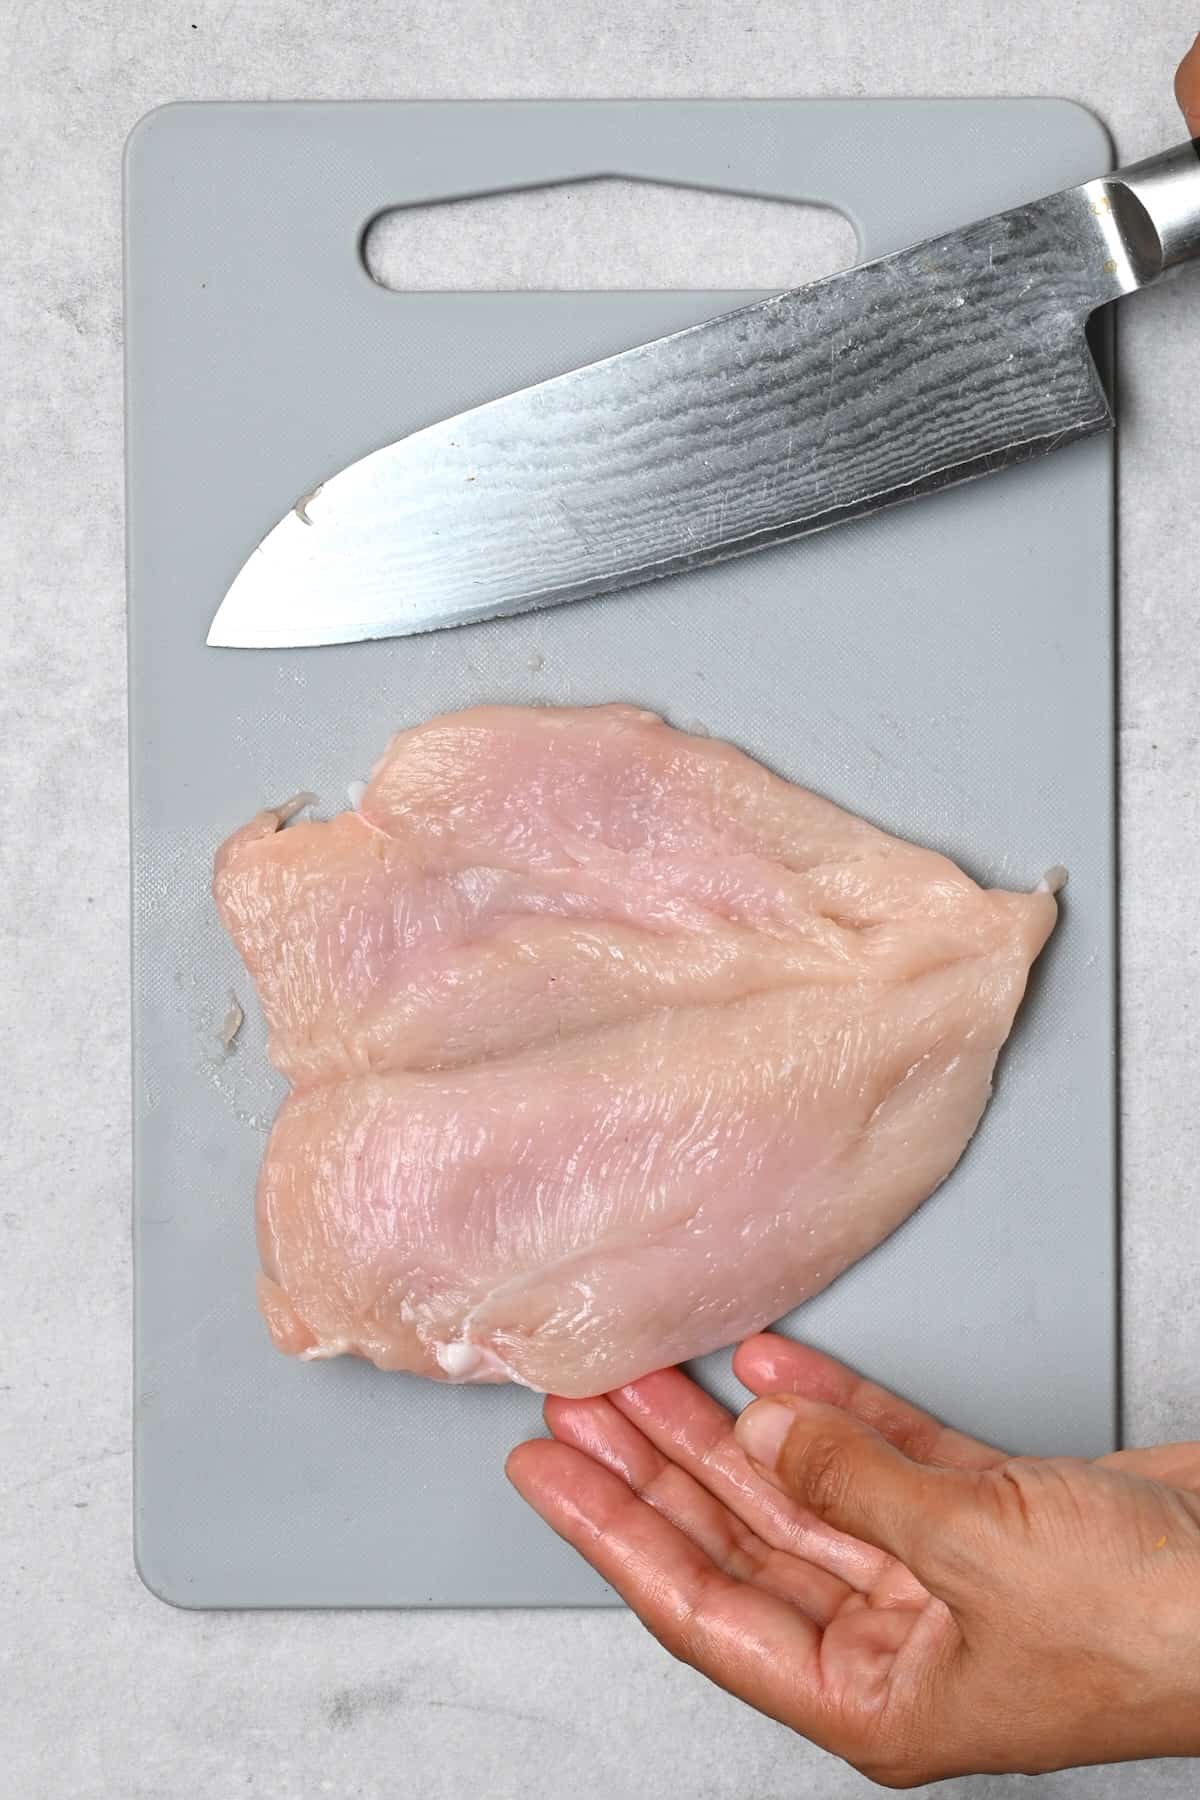 Butterflied chicken breast fillet on a cutting board